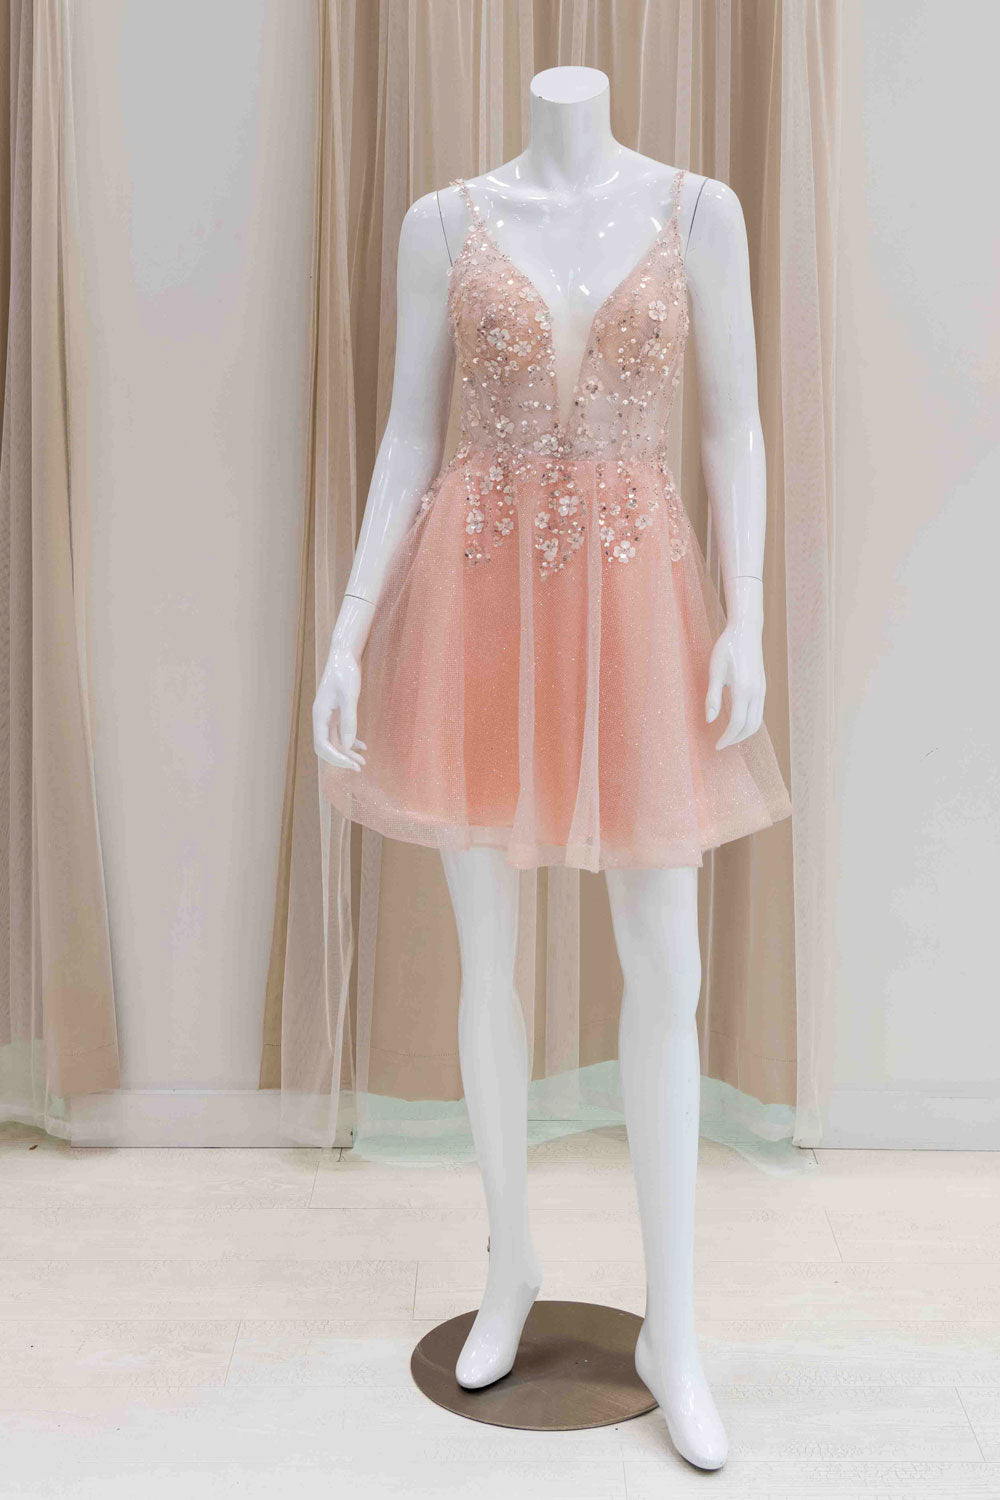 Pink Short Sweet 16 Dress